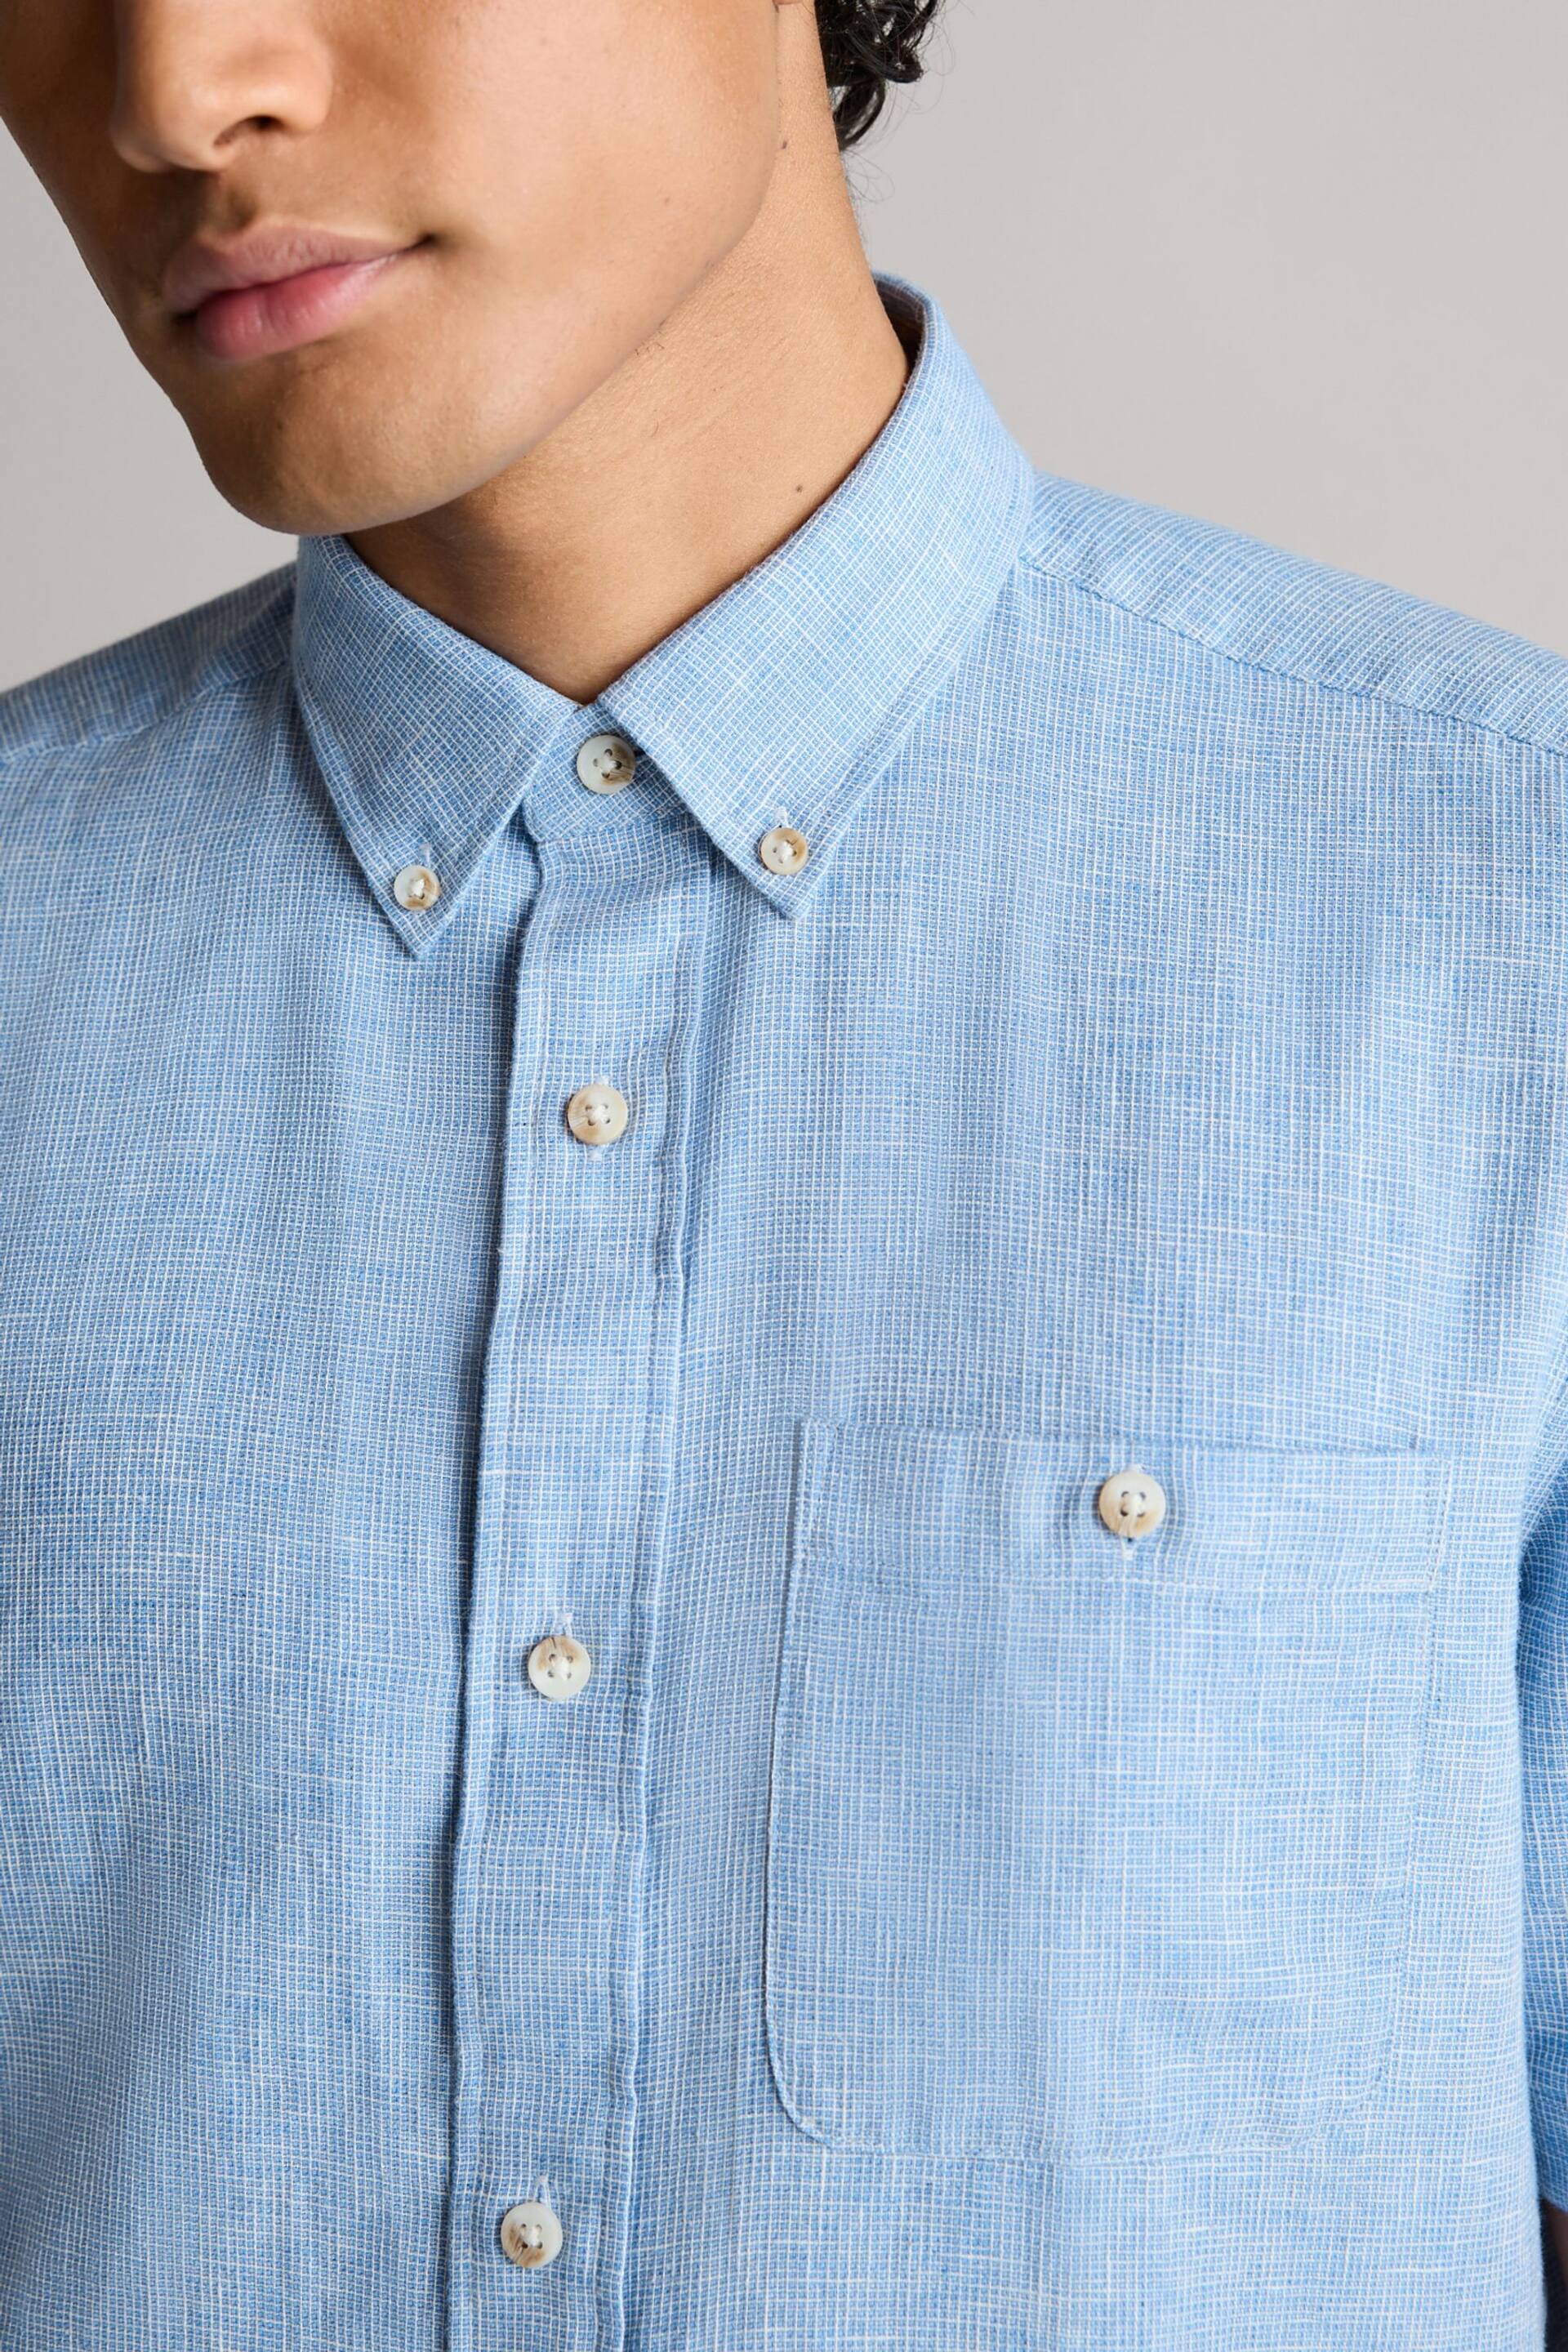 Blue Standard Collar Linen Blend Short Sleeve Shirt - Image 4 of 8